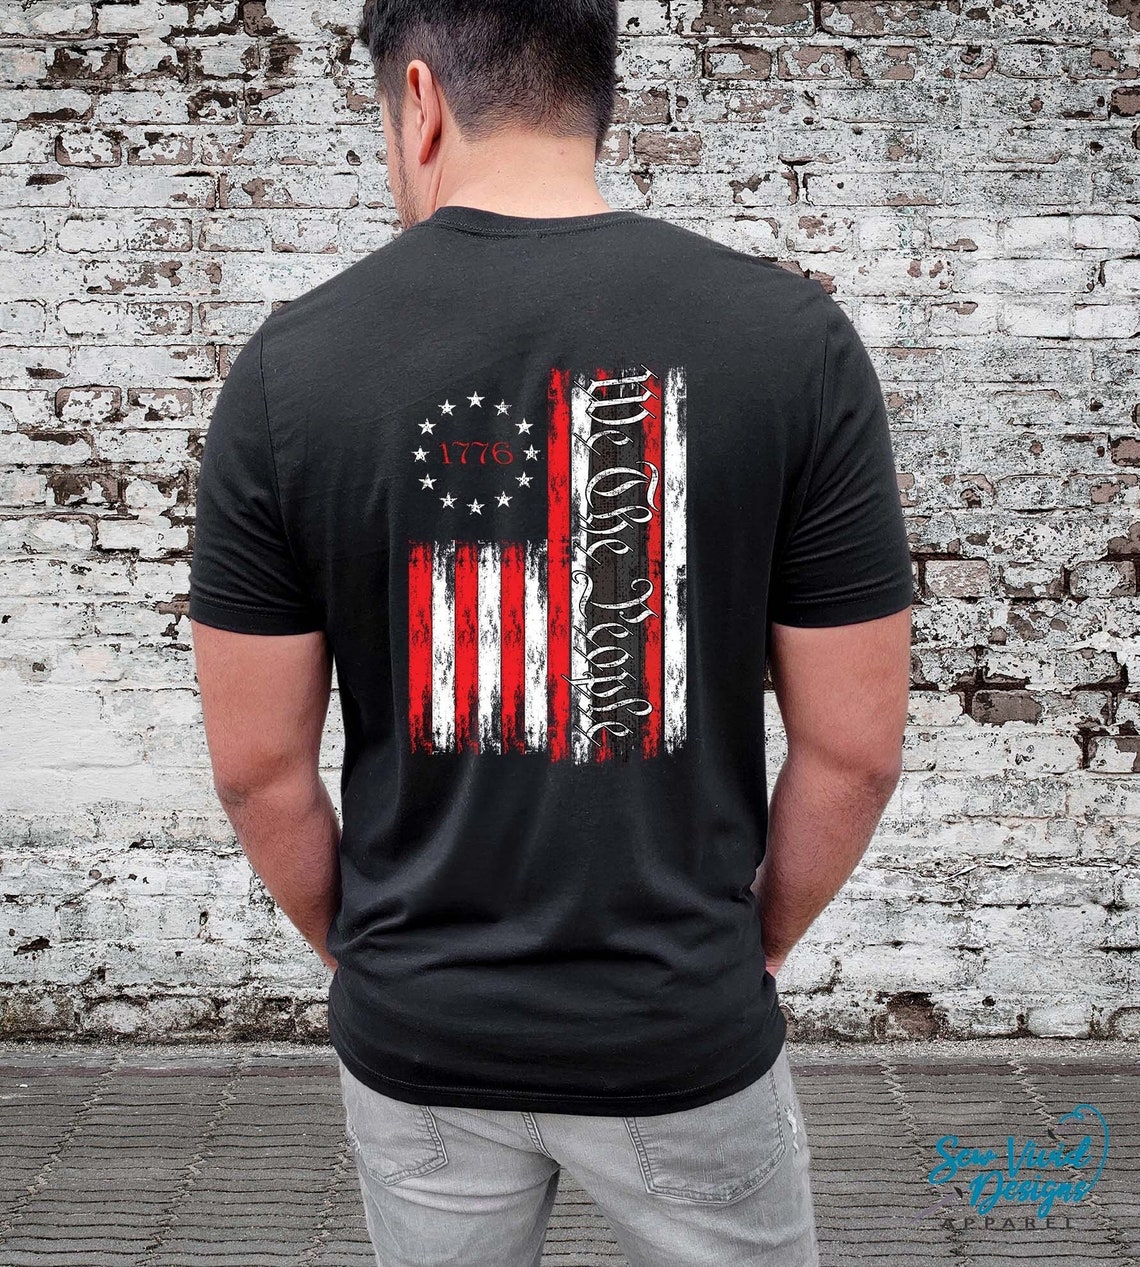 We the People Shirt Unisex T-shirt 1776 Flag Shirt - Etsy